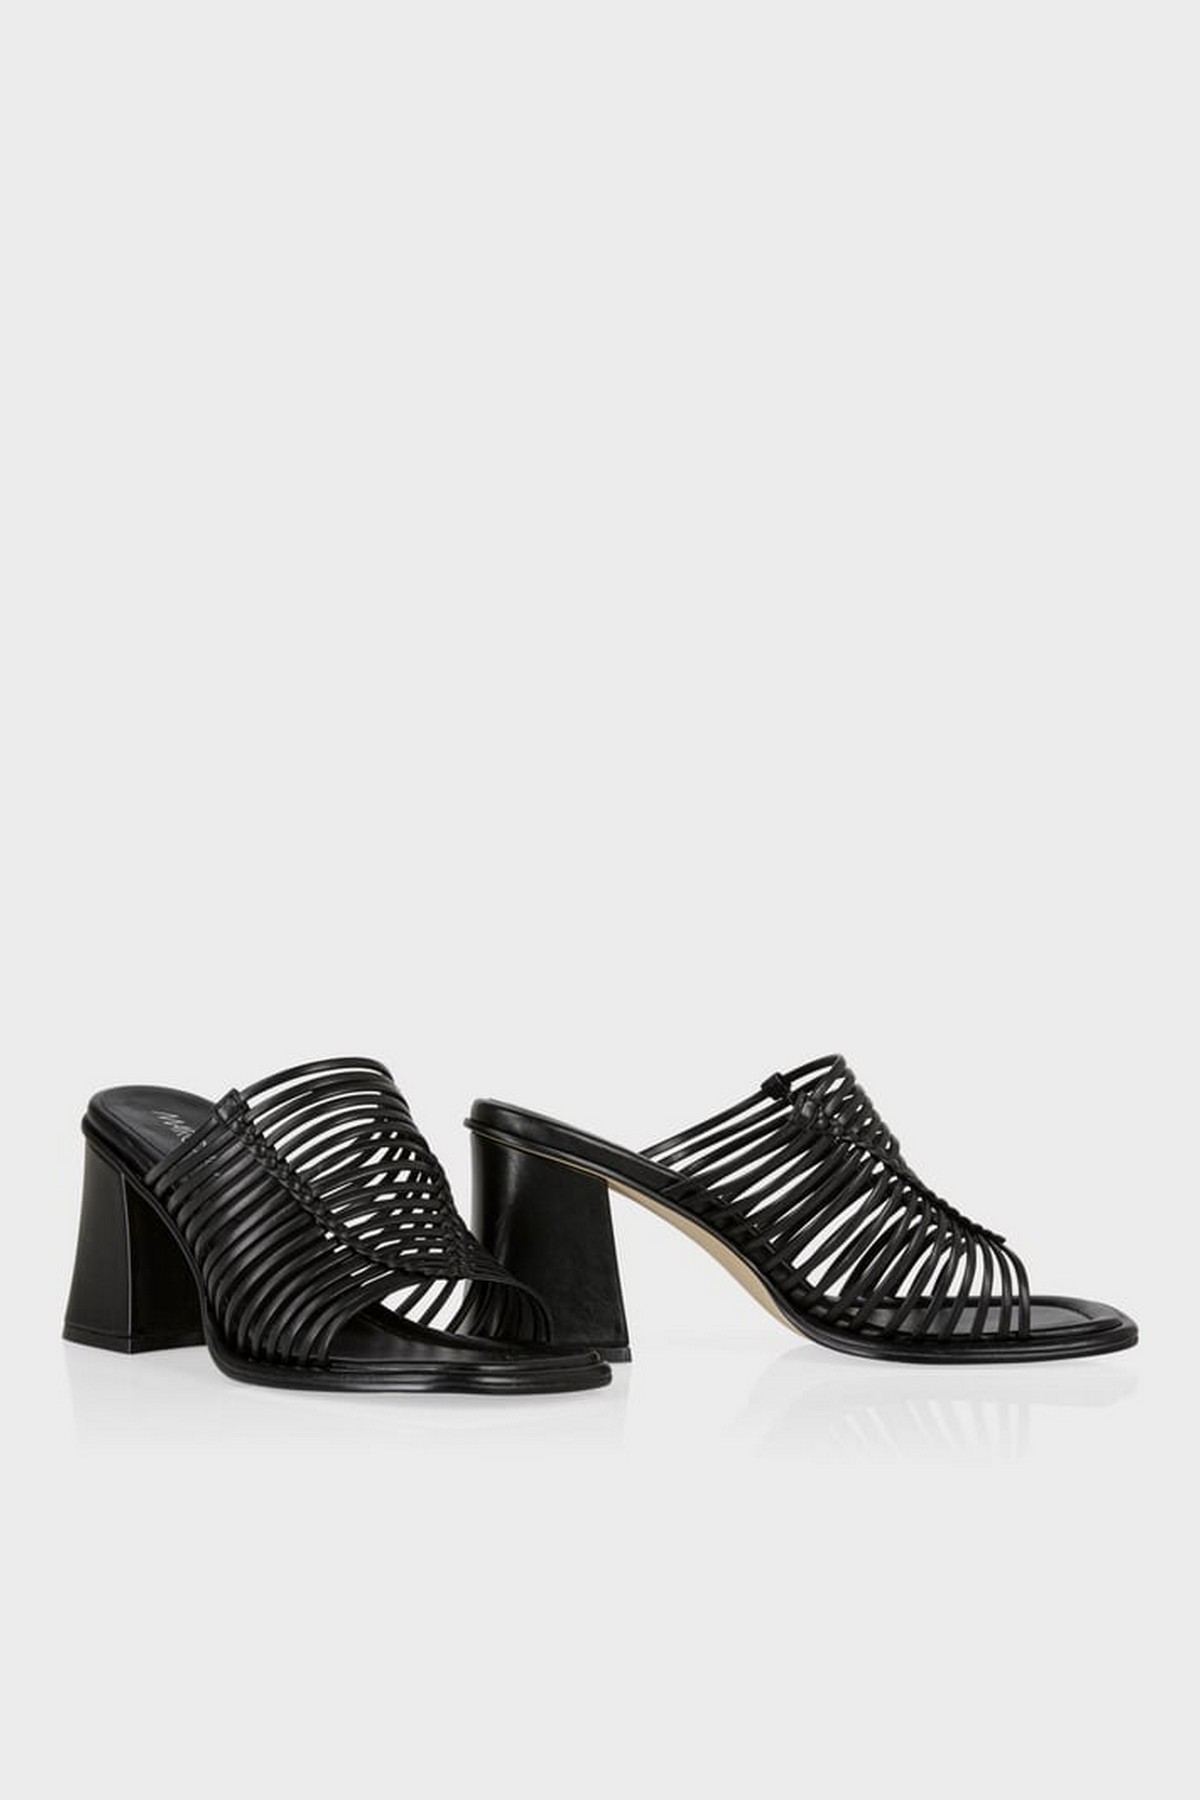 Sandaal hak lintjes in de kleur zwart van het merk Marc Cain Shoes